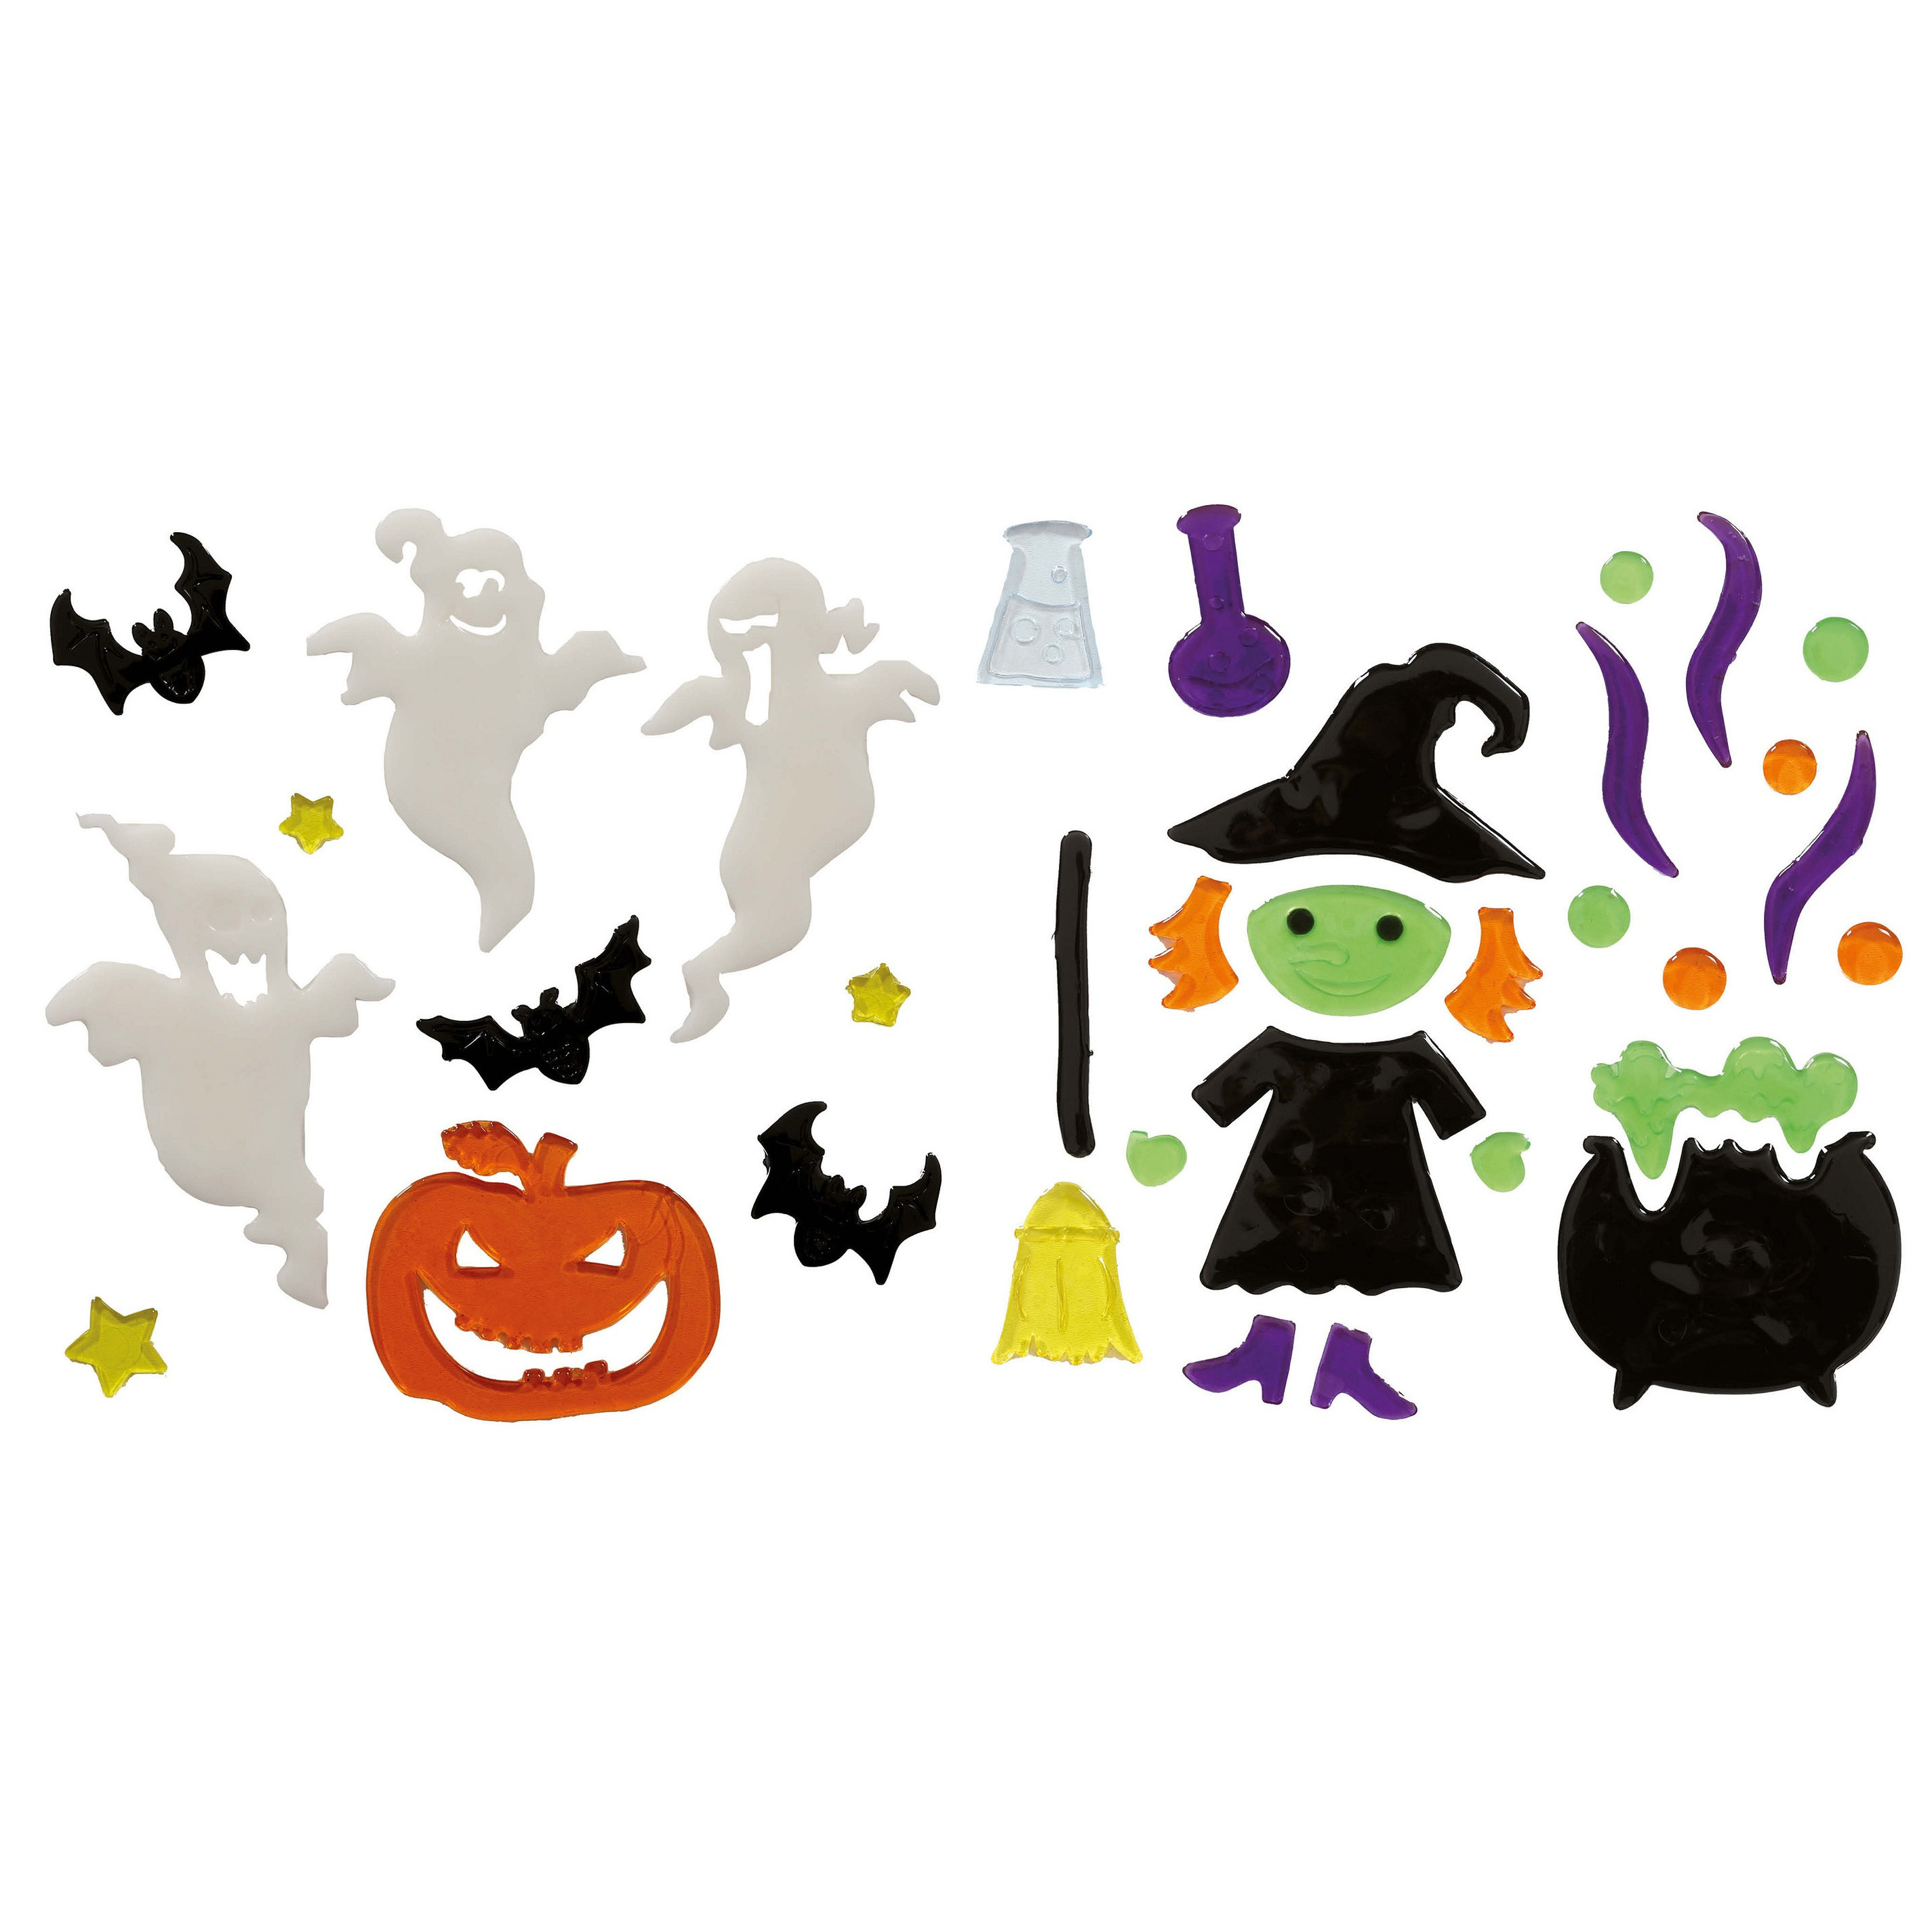 Horror gel raamstickers Heks/spookjes - 2x vellen - Halloween thema decoratie/versiering